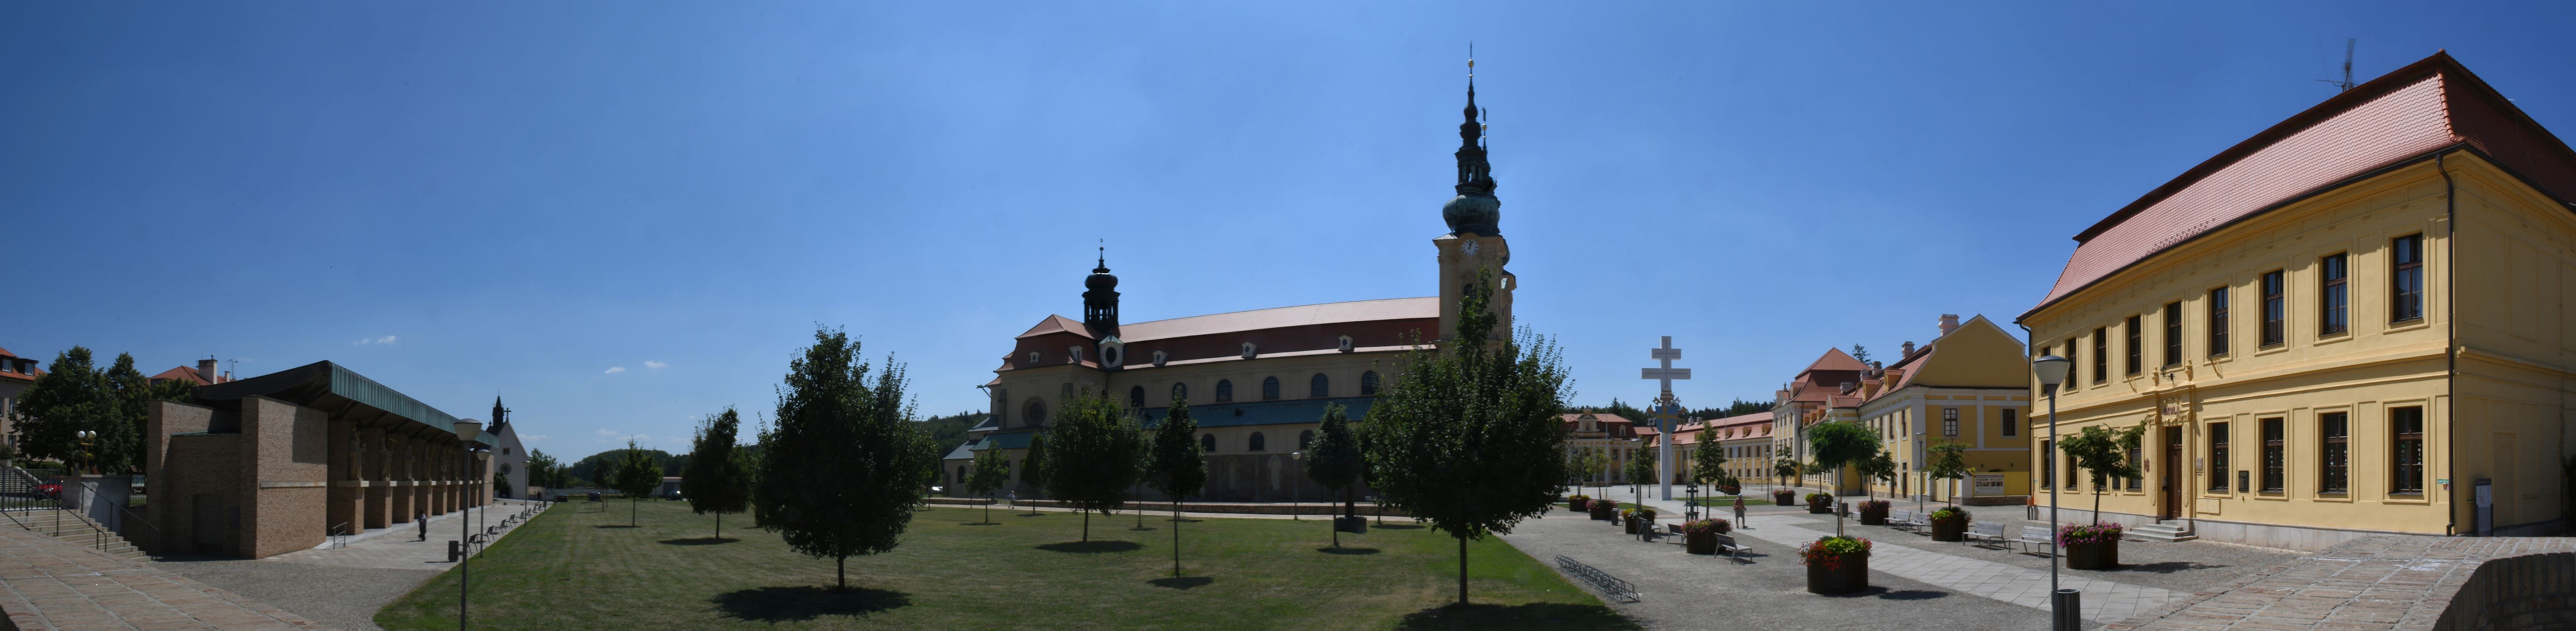 blog:2019-07-26-velehrad-wiege-des-slawischen-christentums:2019-07-25-velehrad-134b-panorama.jpg